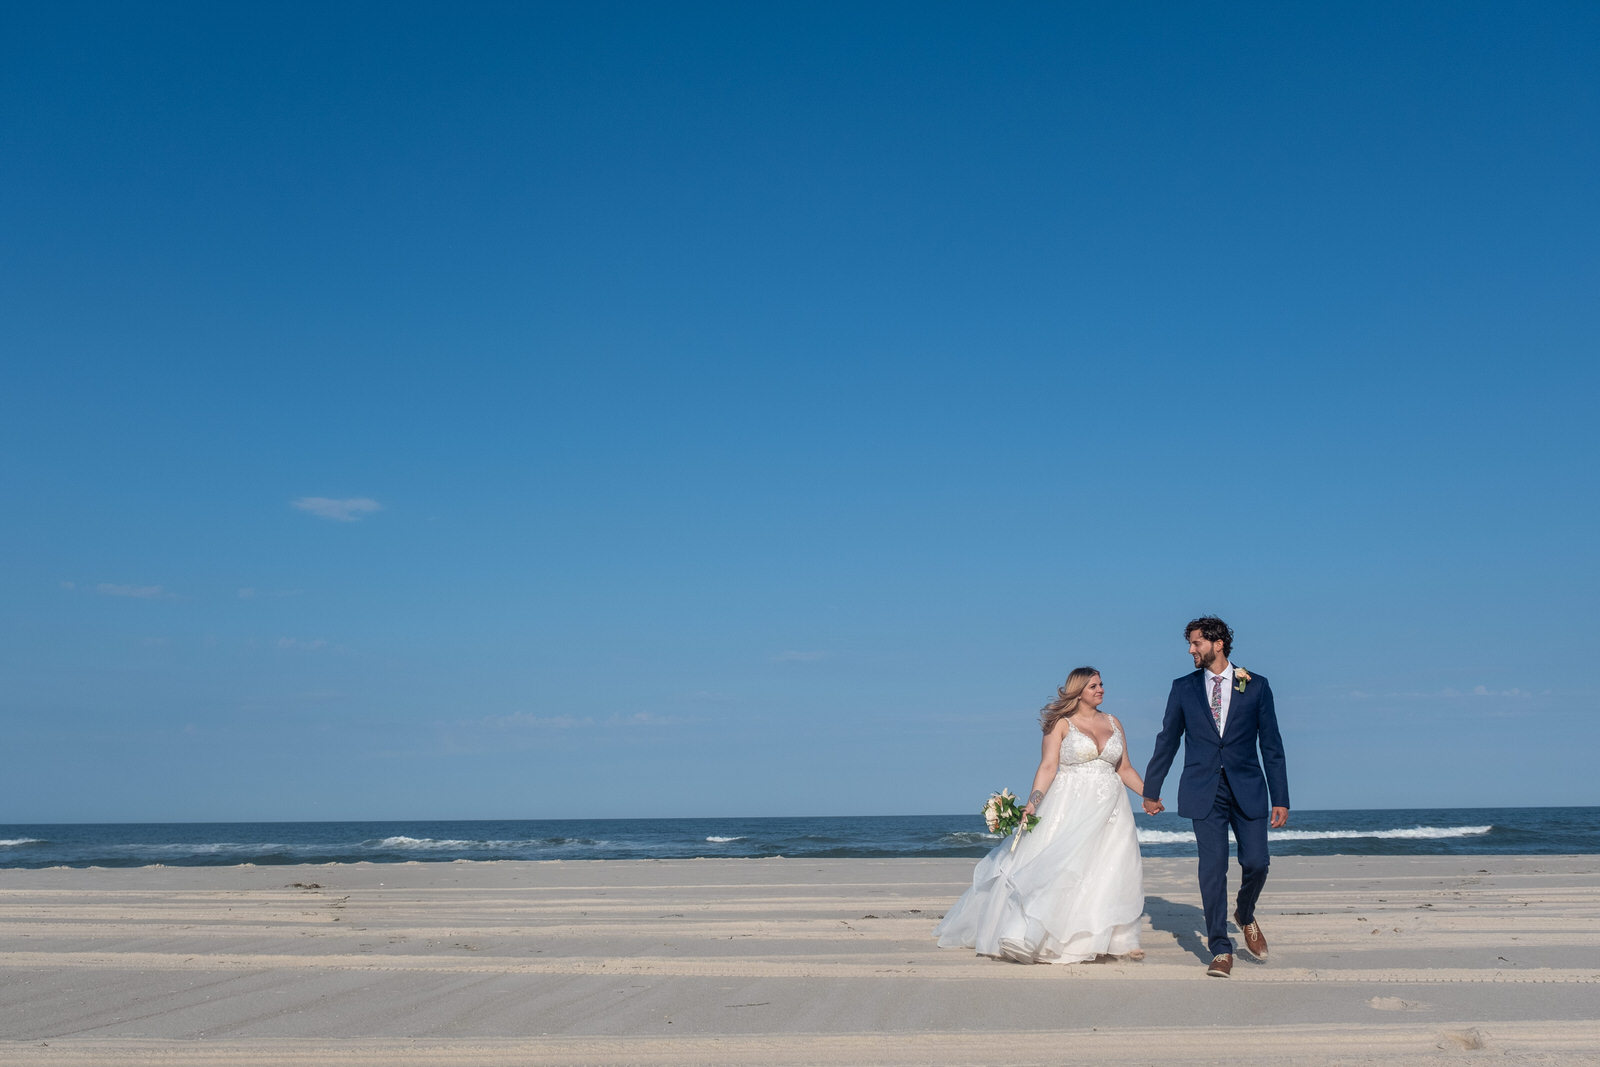 wedding couple on beach walking